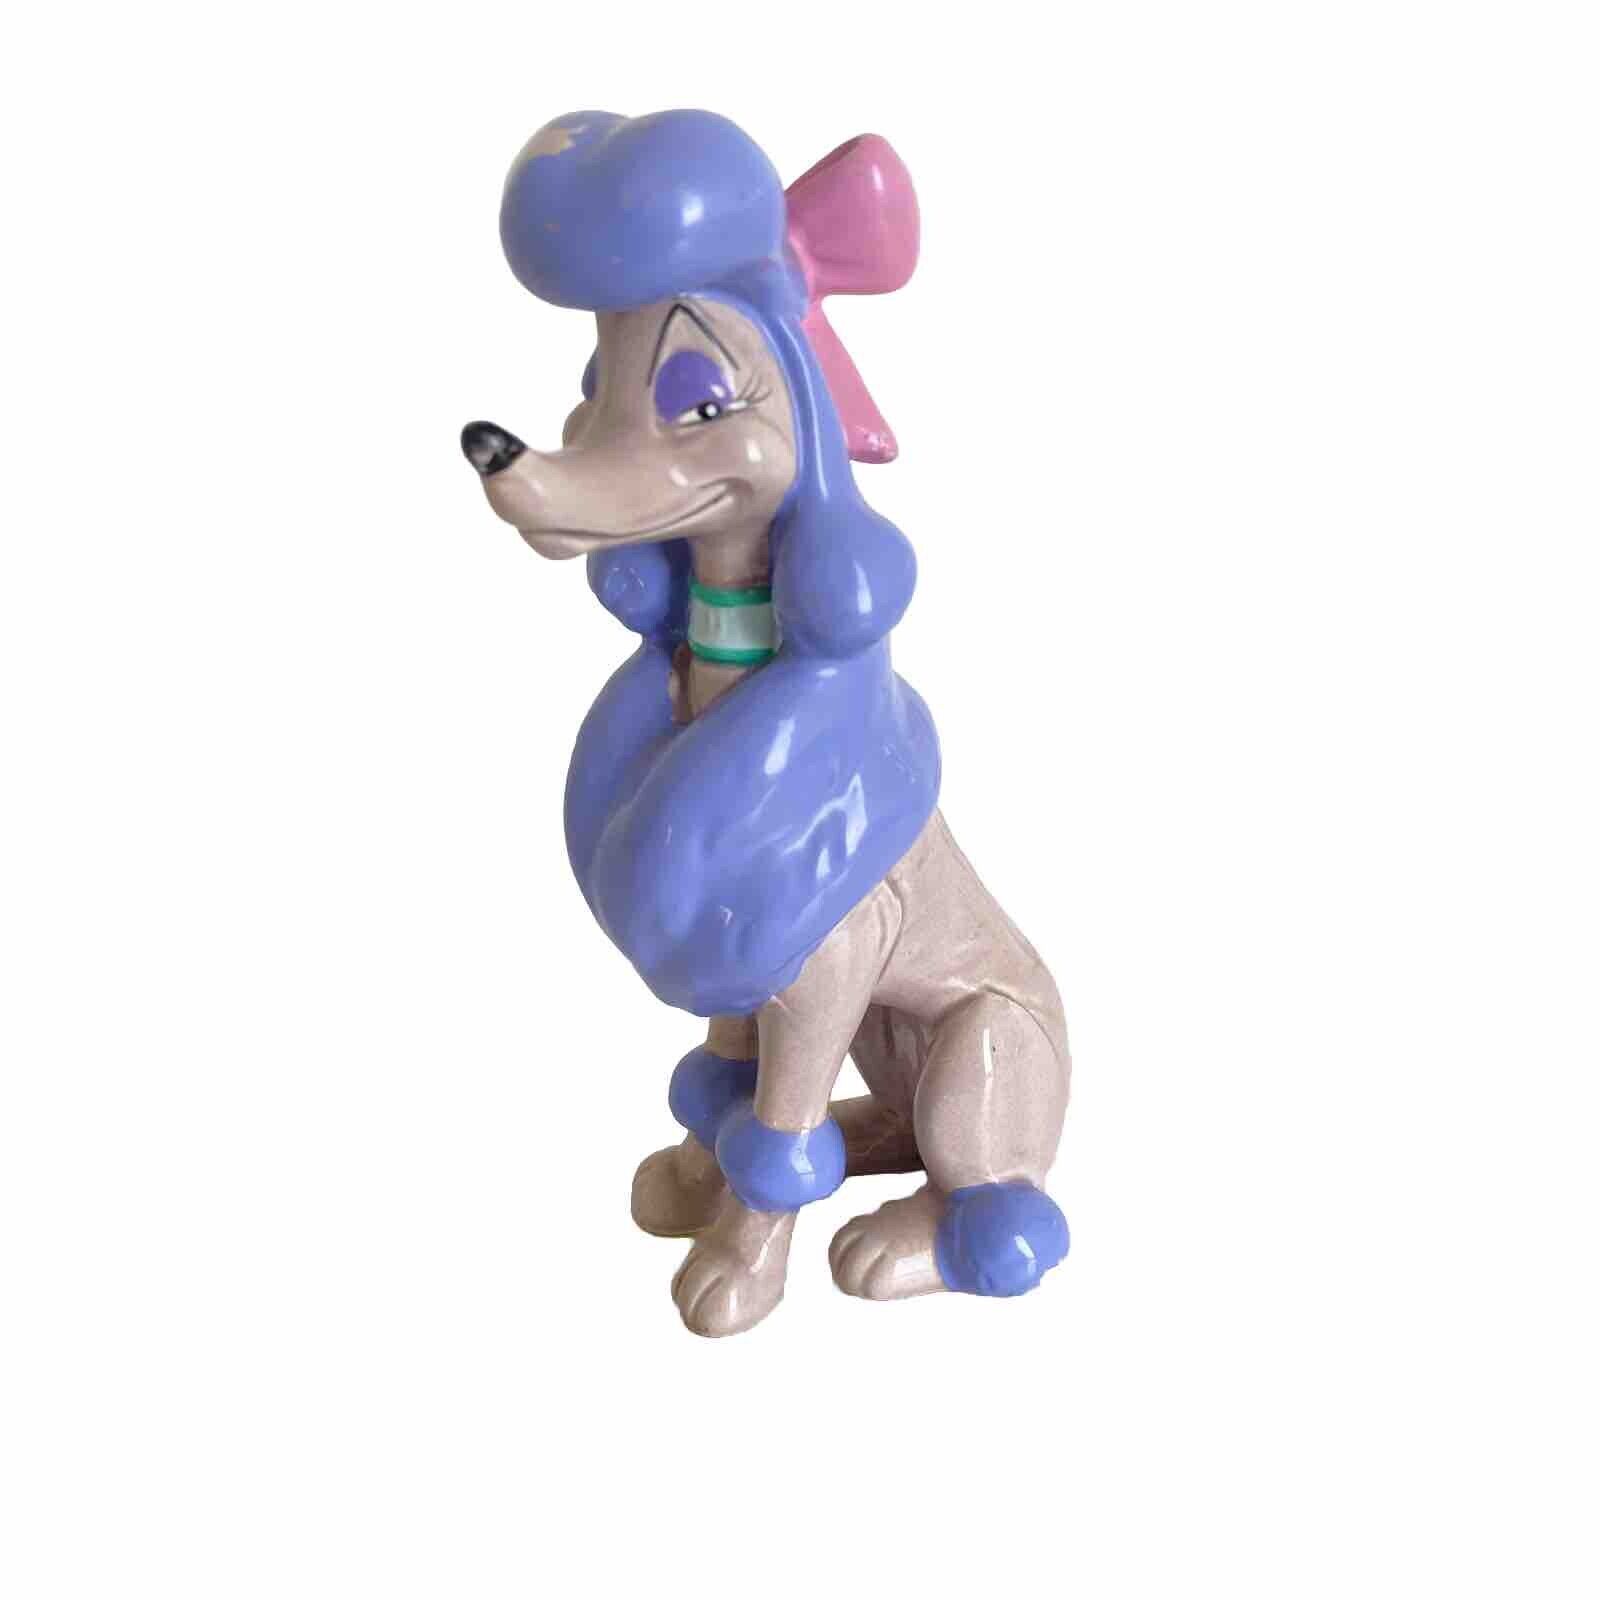 Vintage 1988 Walt Disney Japan Oliver And Company Georgette Poodle Dog Figurine